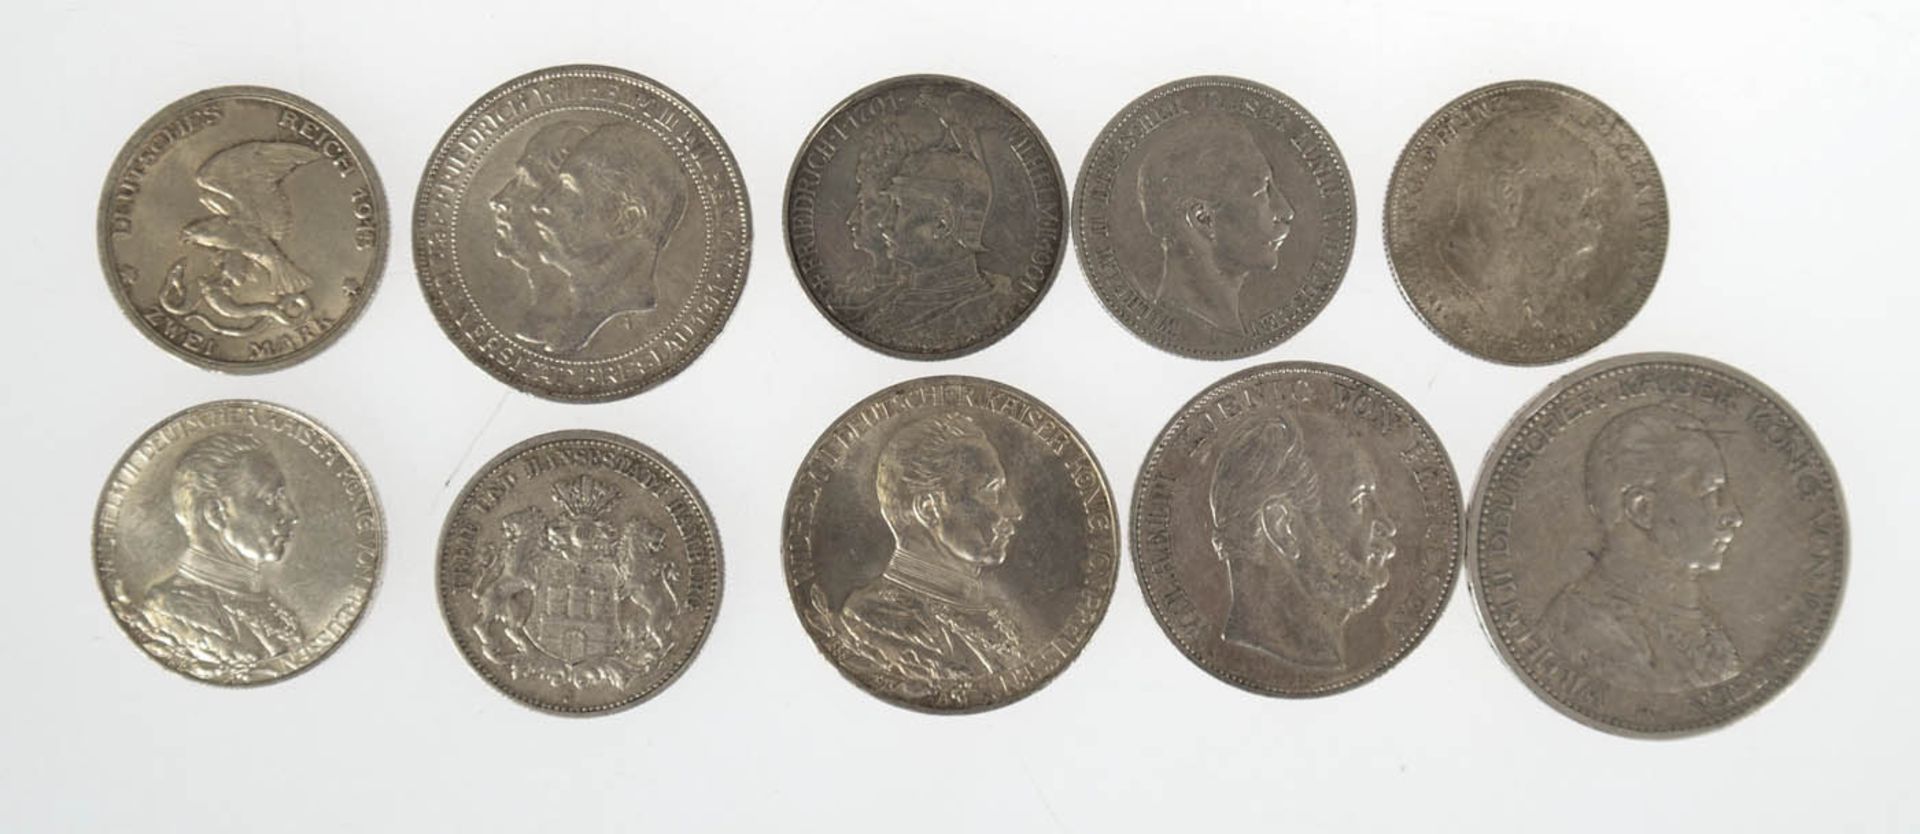 Konvolut von 10 Silbermünzen, Preussen, dabei 5 M, 1913 A, 2x 3 M, 1911 A und 1913 A, 6x 2M, 1896 A,